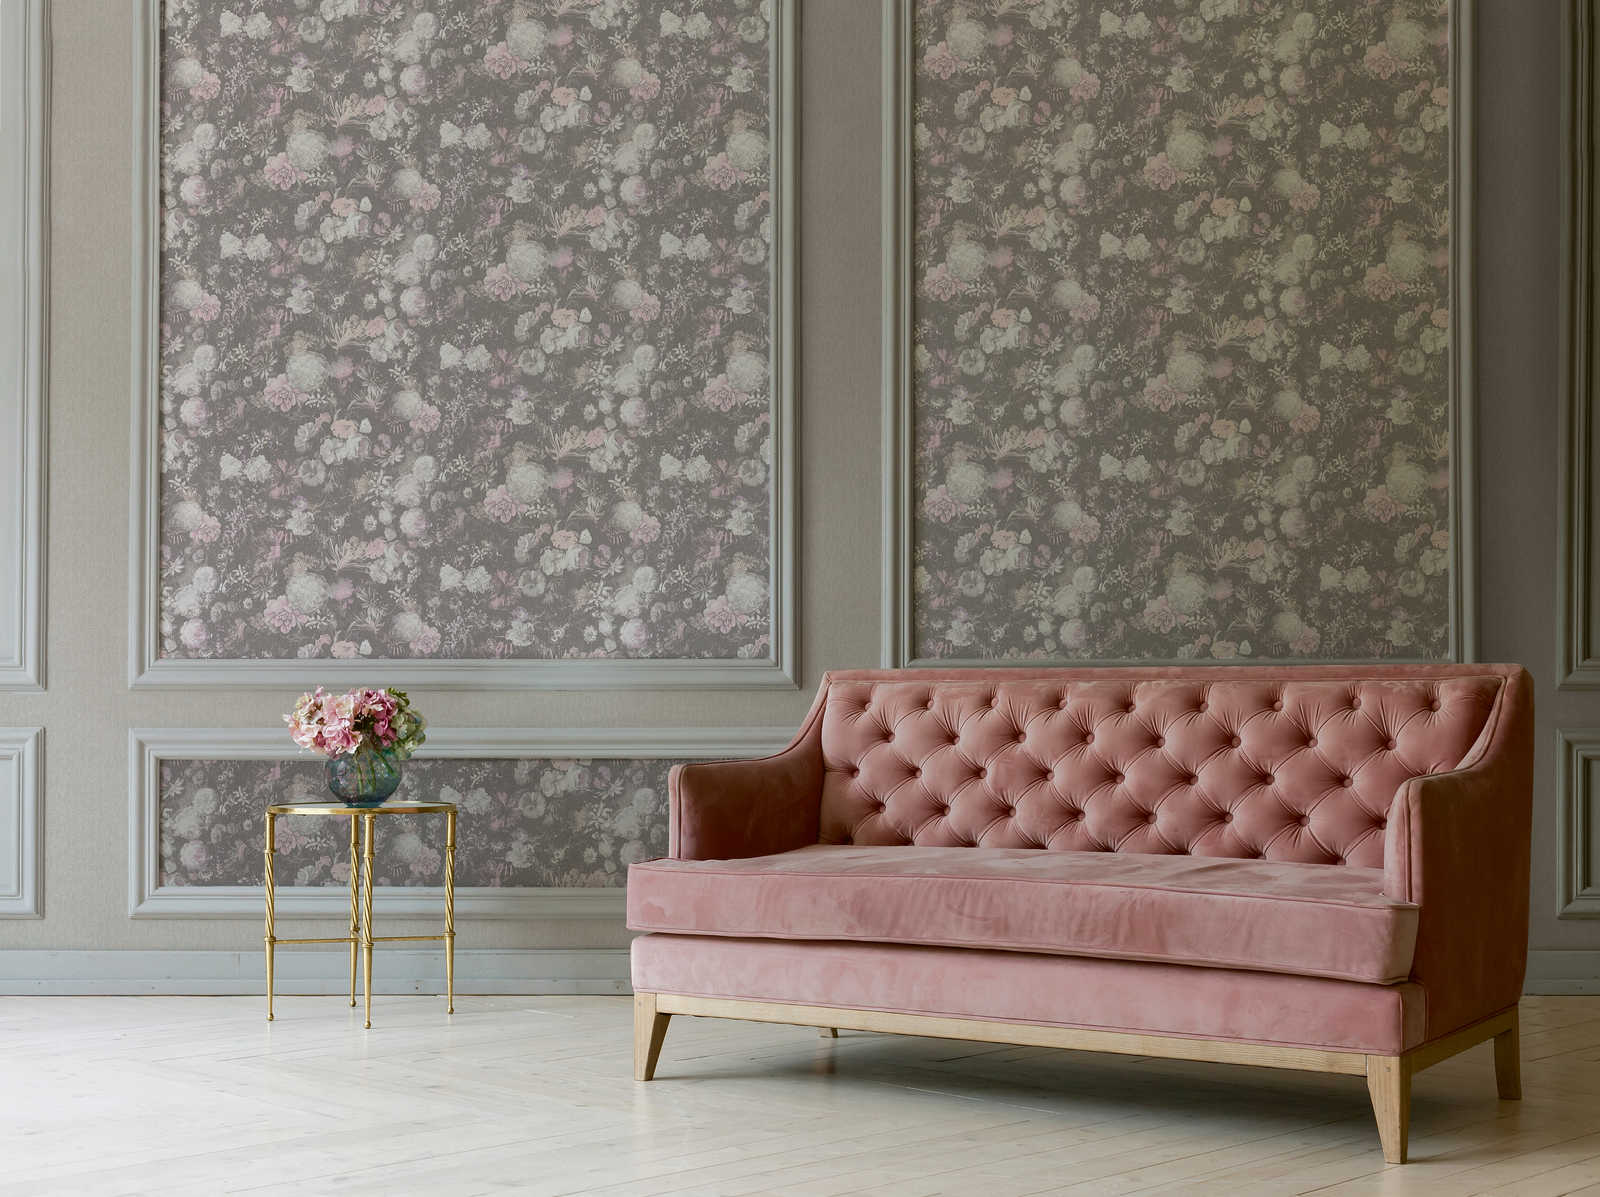             Bloemenbehang Roze & Grijs in Vintage Design
        